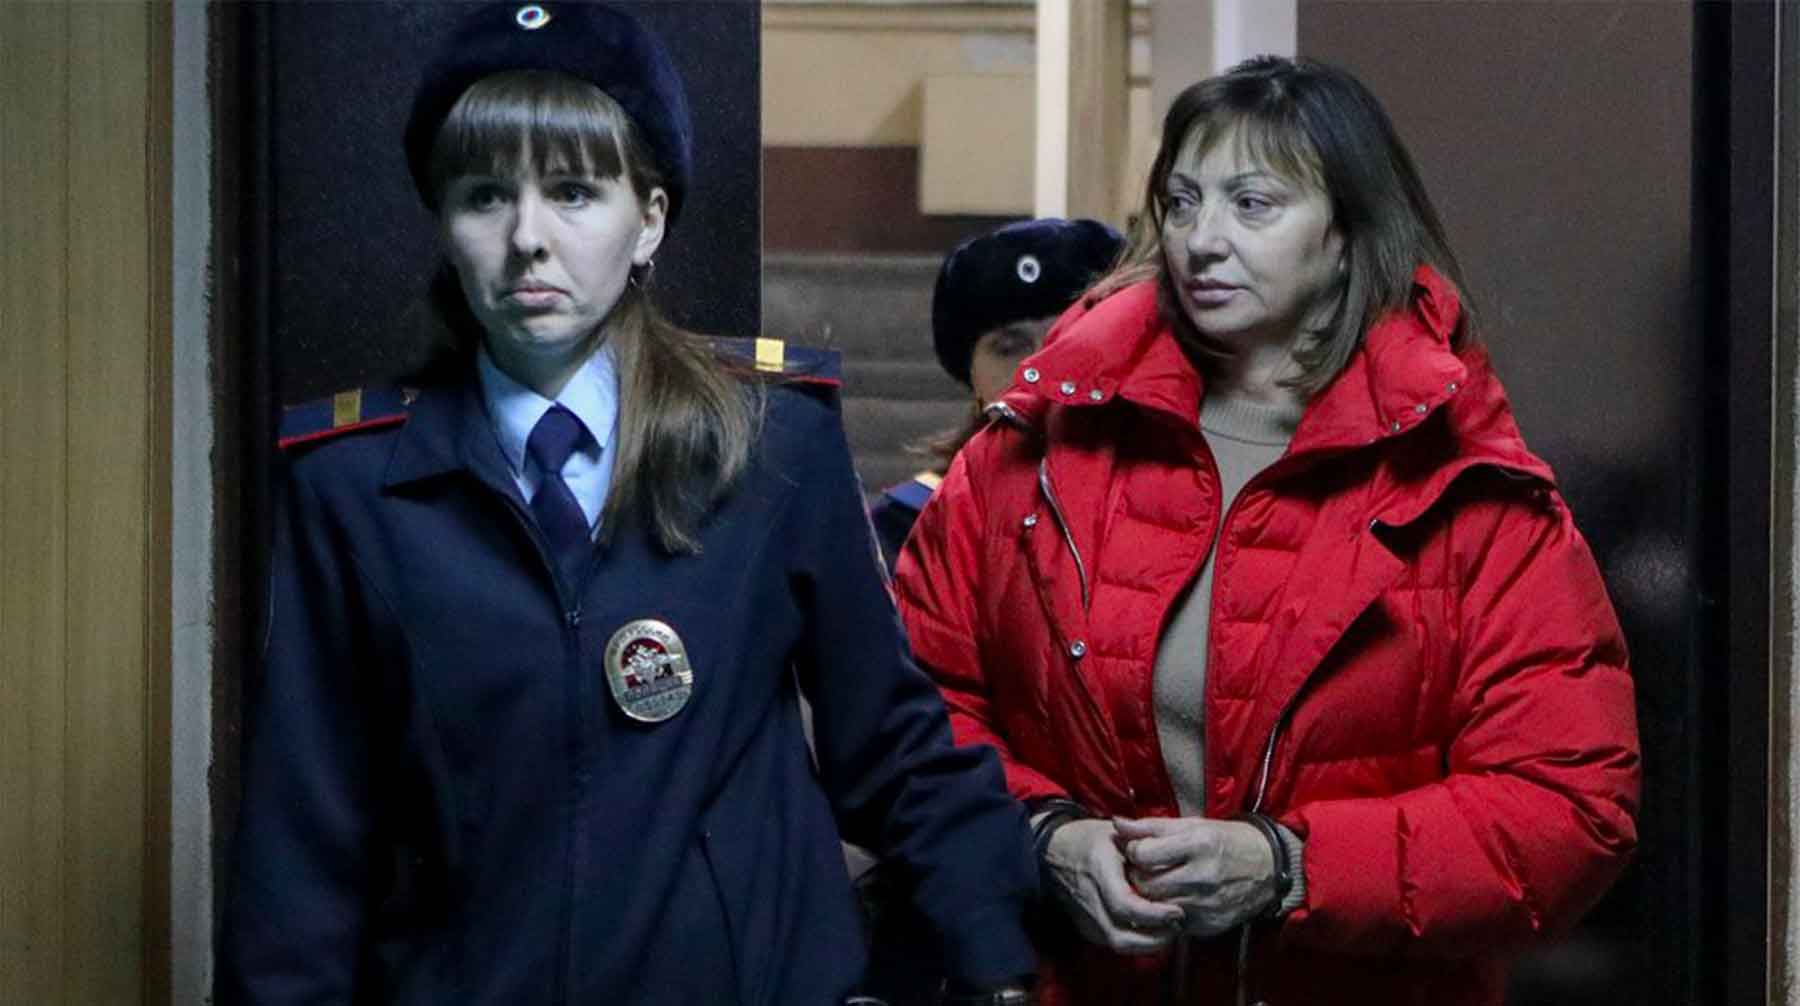 25 ноября суд арестовал Ирину Голосную по обвинениню в злоупотреблении должностными полномочиями Фото: © АГН Москва / Андрей Никеричев